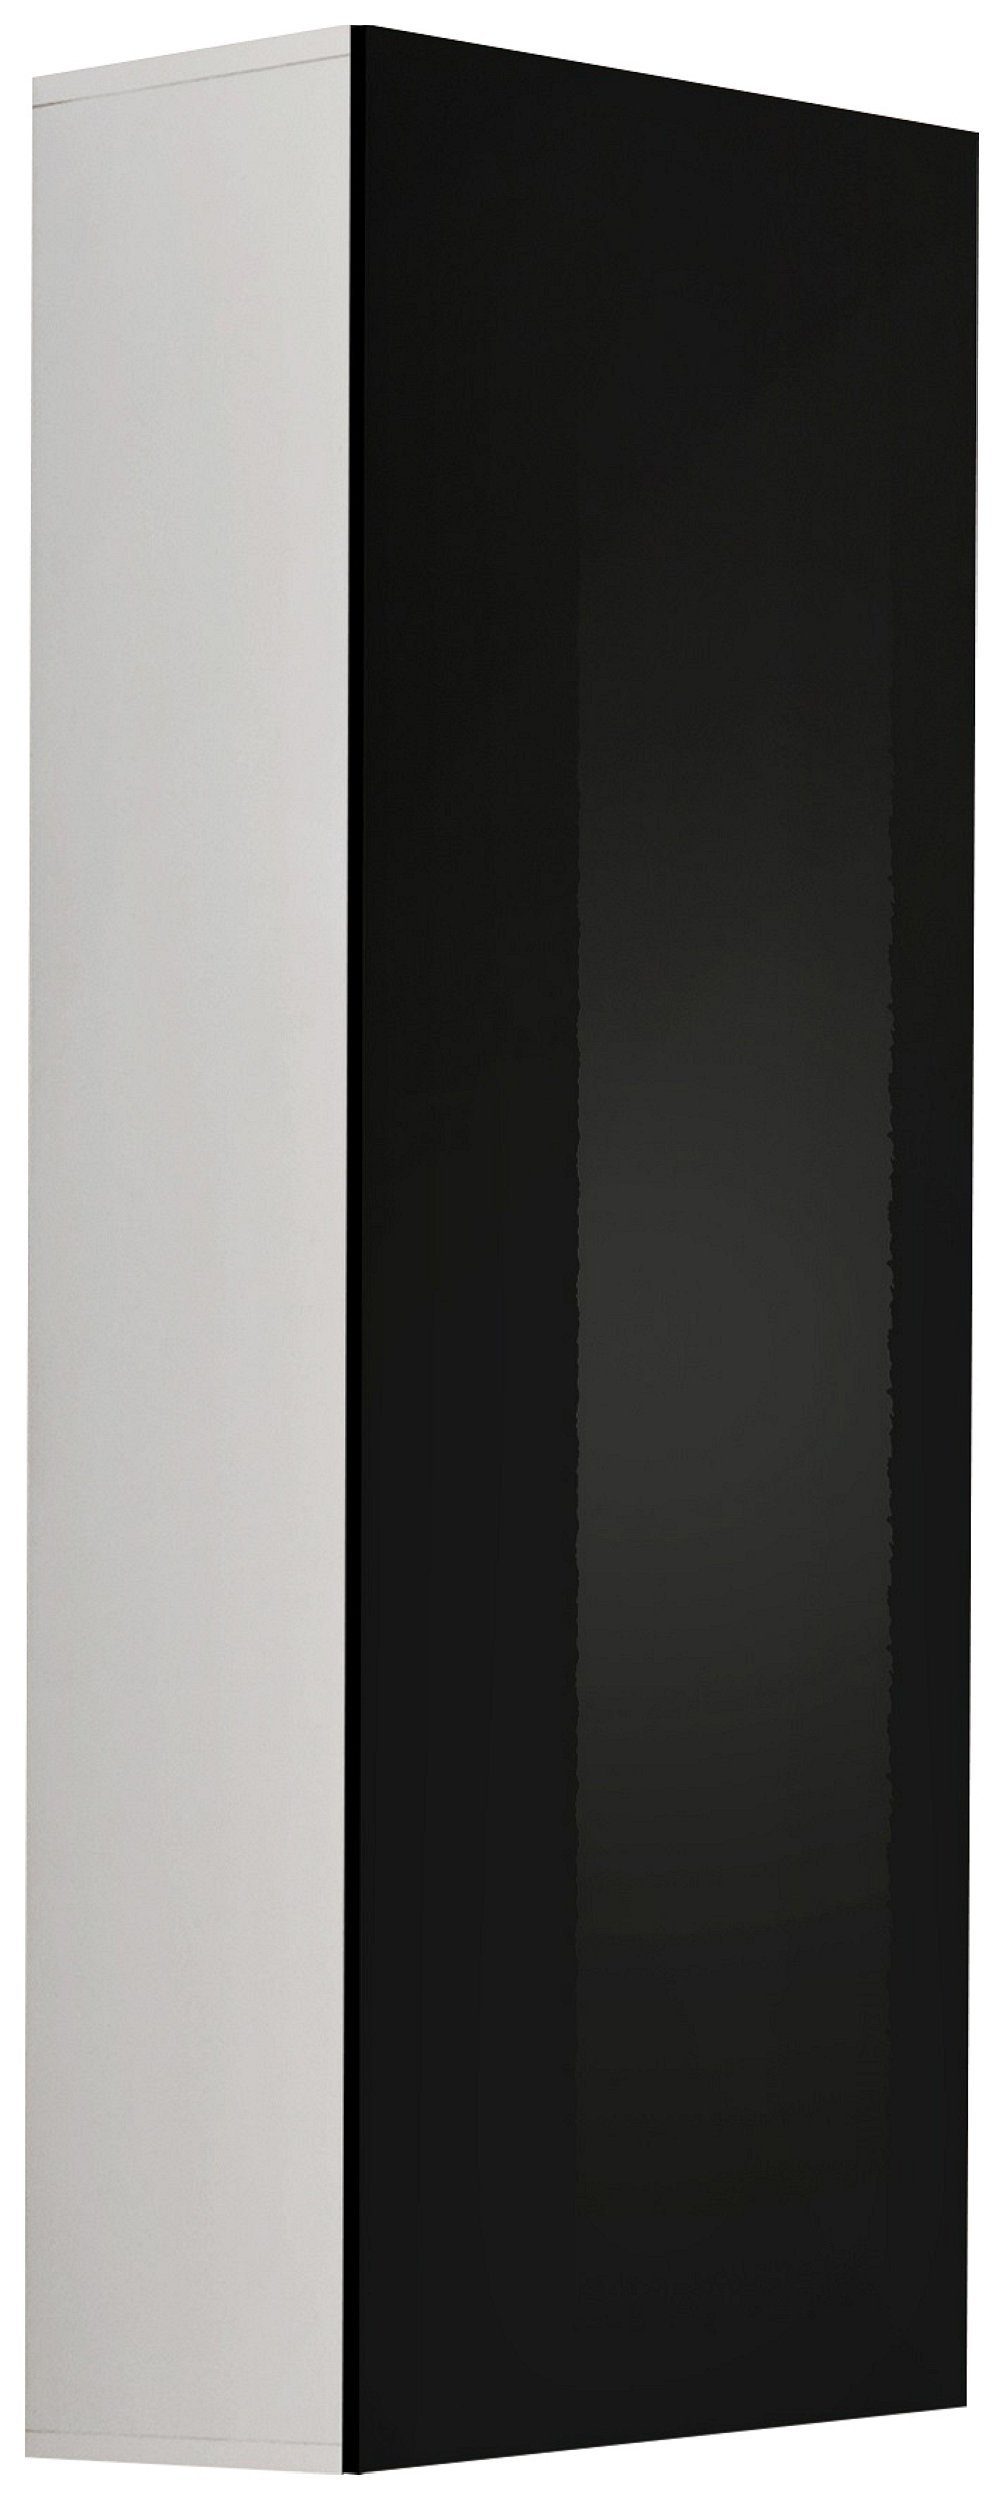 Stylefy Stauraumschrank FLI T40 rechts 126x40x29 cm (Wandregal, Wandschrank, Wohnmöbel) mit 2 Einlegeböden, mit Push-to-Open, Hochglanzfront, Design Modern, variabel hängbar Weiß Matt / Schwarz Hochglanz